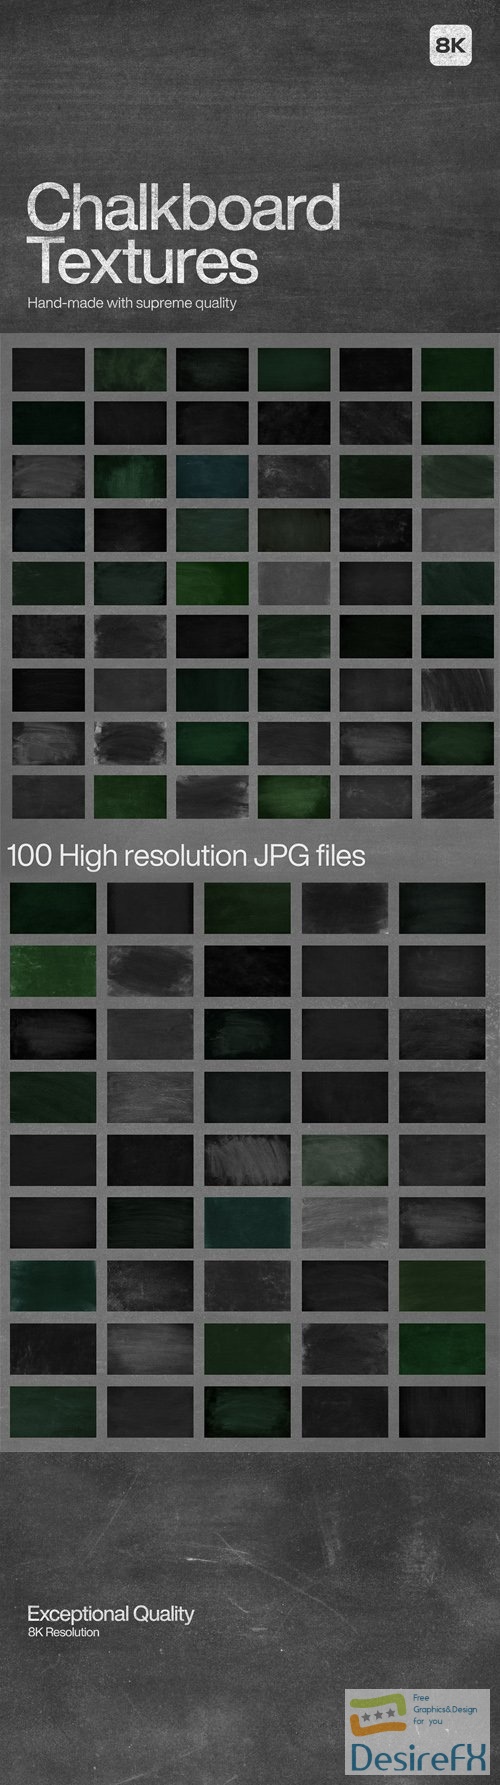 100 Chalkboard Textures 8K